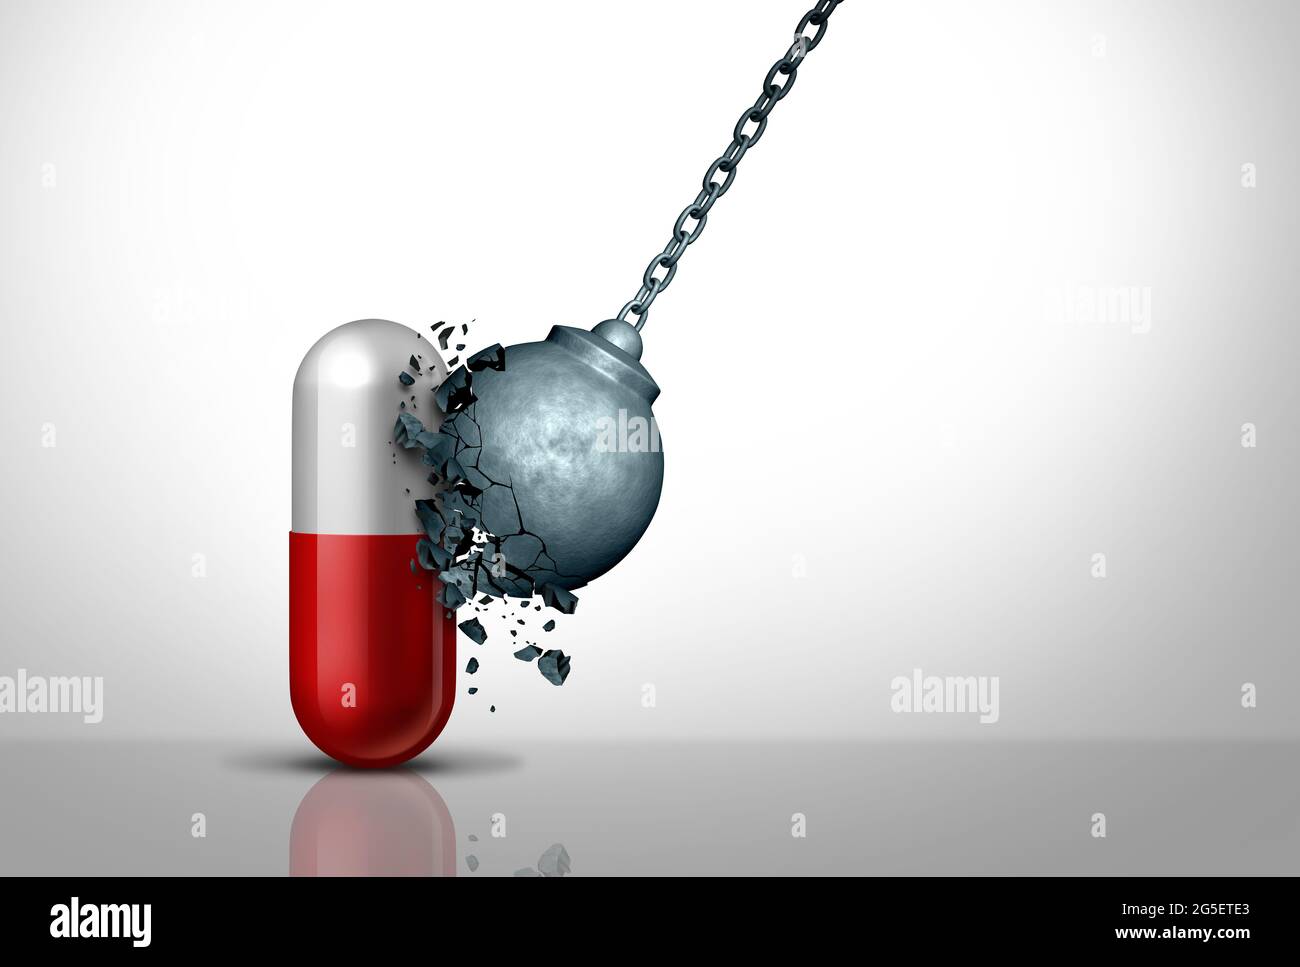 Medicamento potente o fuerza extra La medicina fuerte y el poder de los medicamentos farmacéuticos o la píldora resistente y eficaz. Foto de stock